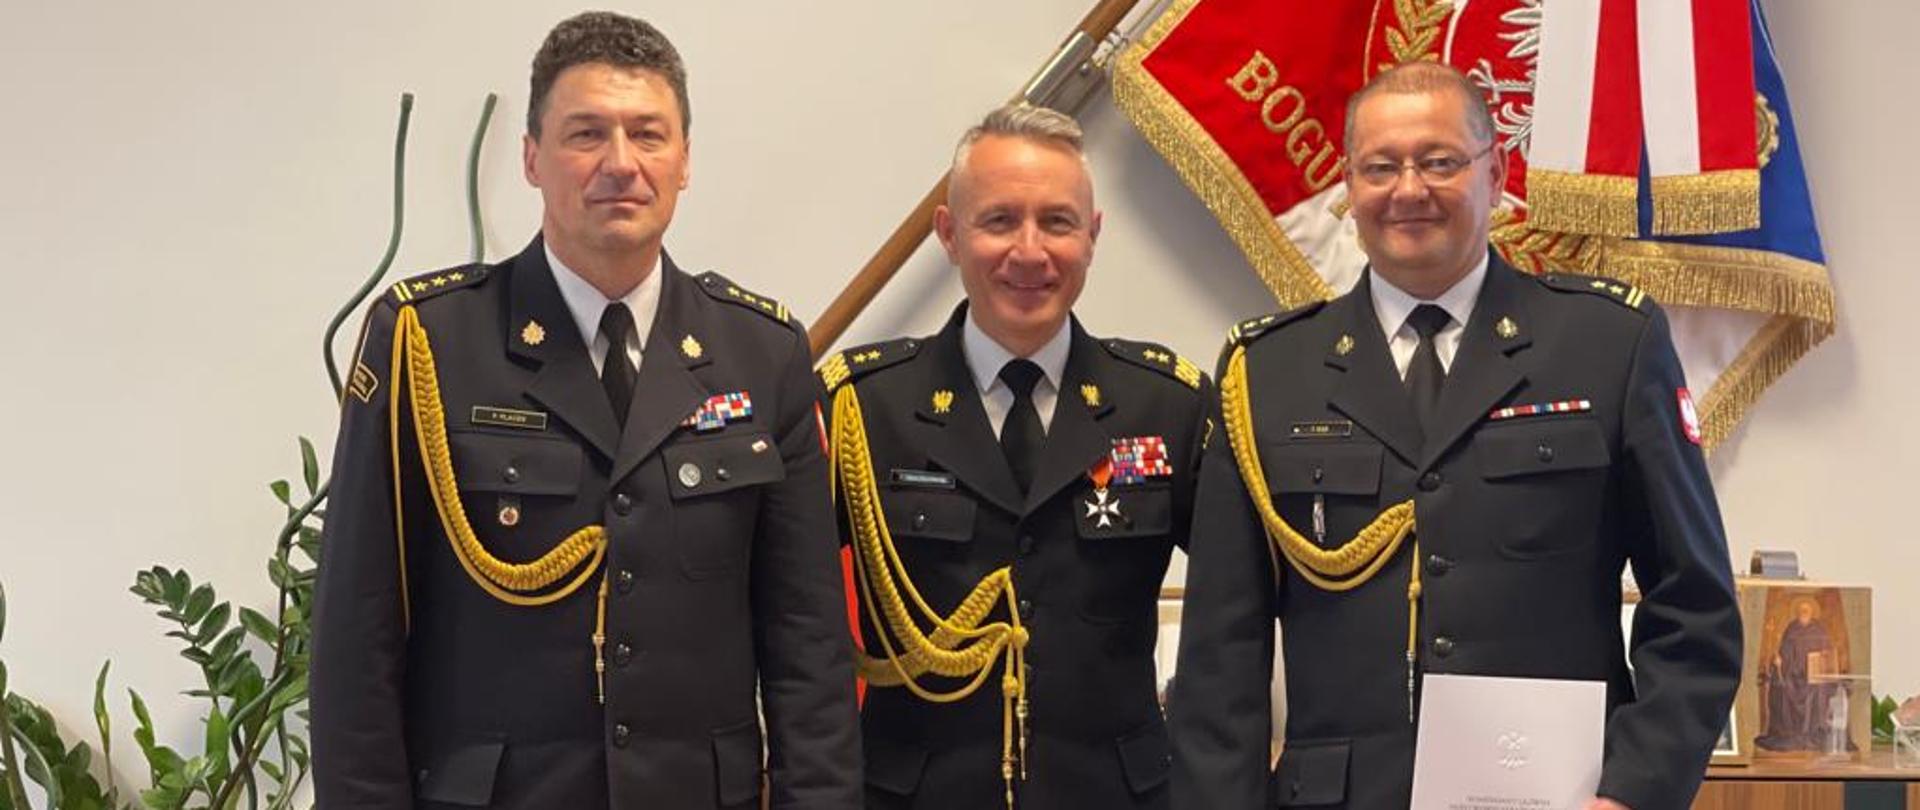 Powołanie zastępcy komendanta Centralnej Szkoły PSP w Częstochowie - zdjęcie pamiątkowe trzech oficerów PSP